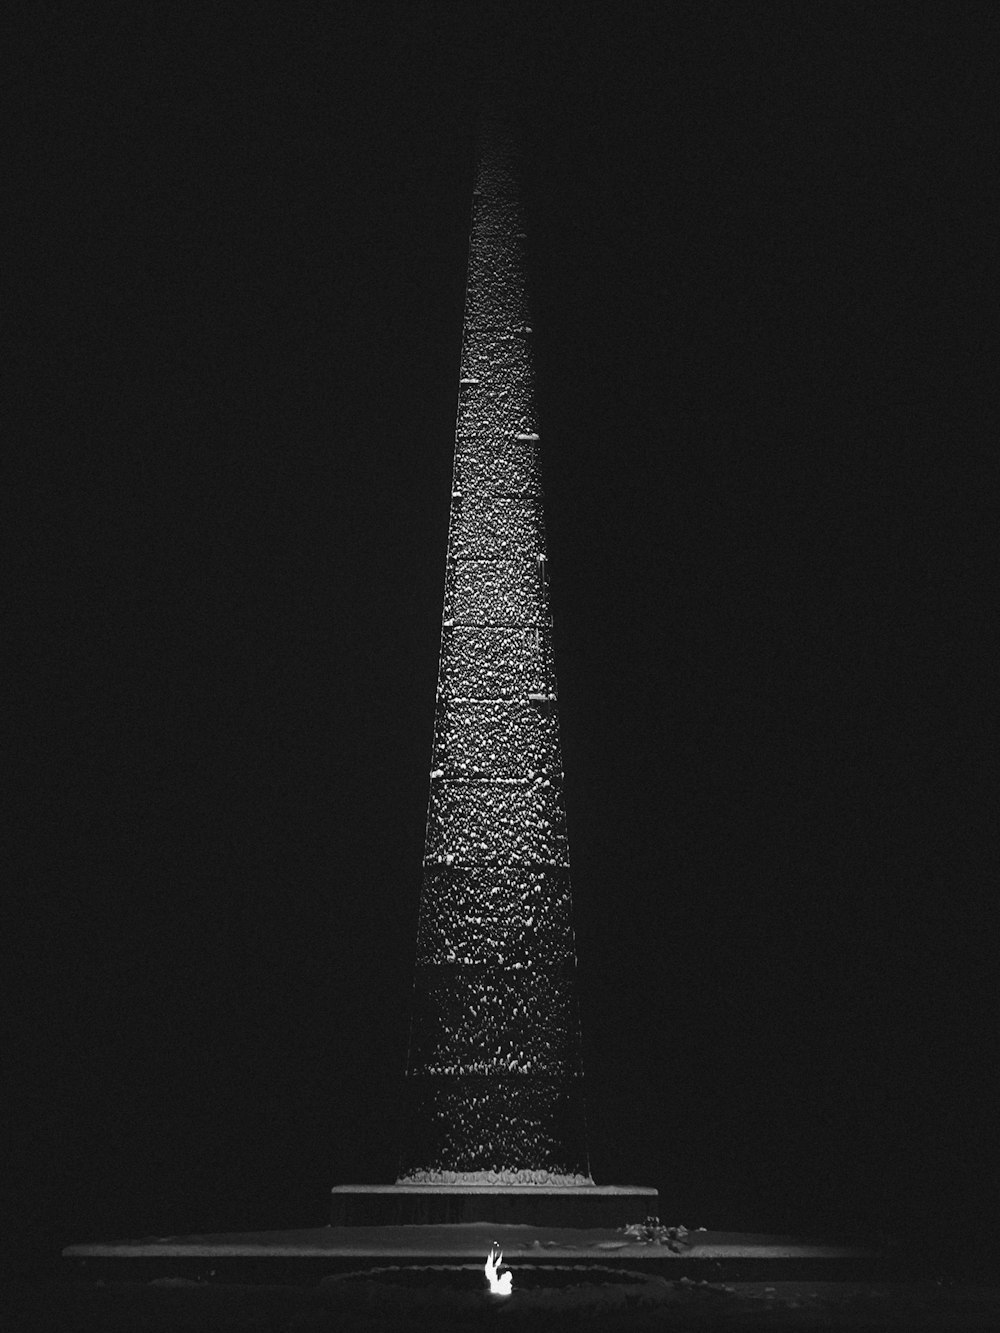 背の高いオベリスクの白黒写真